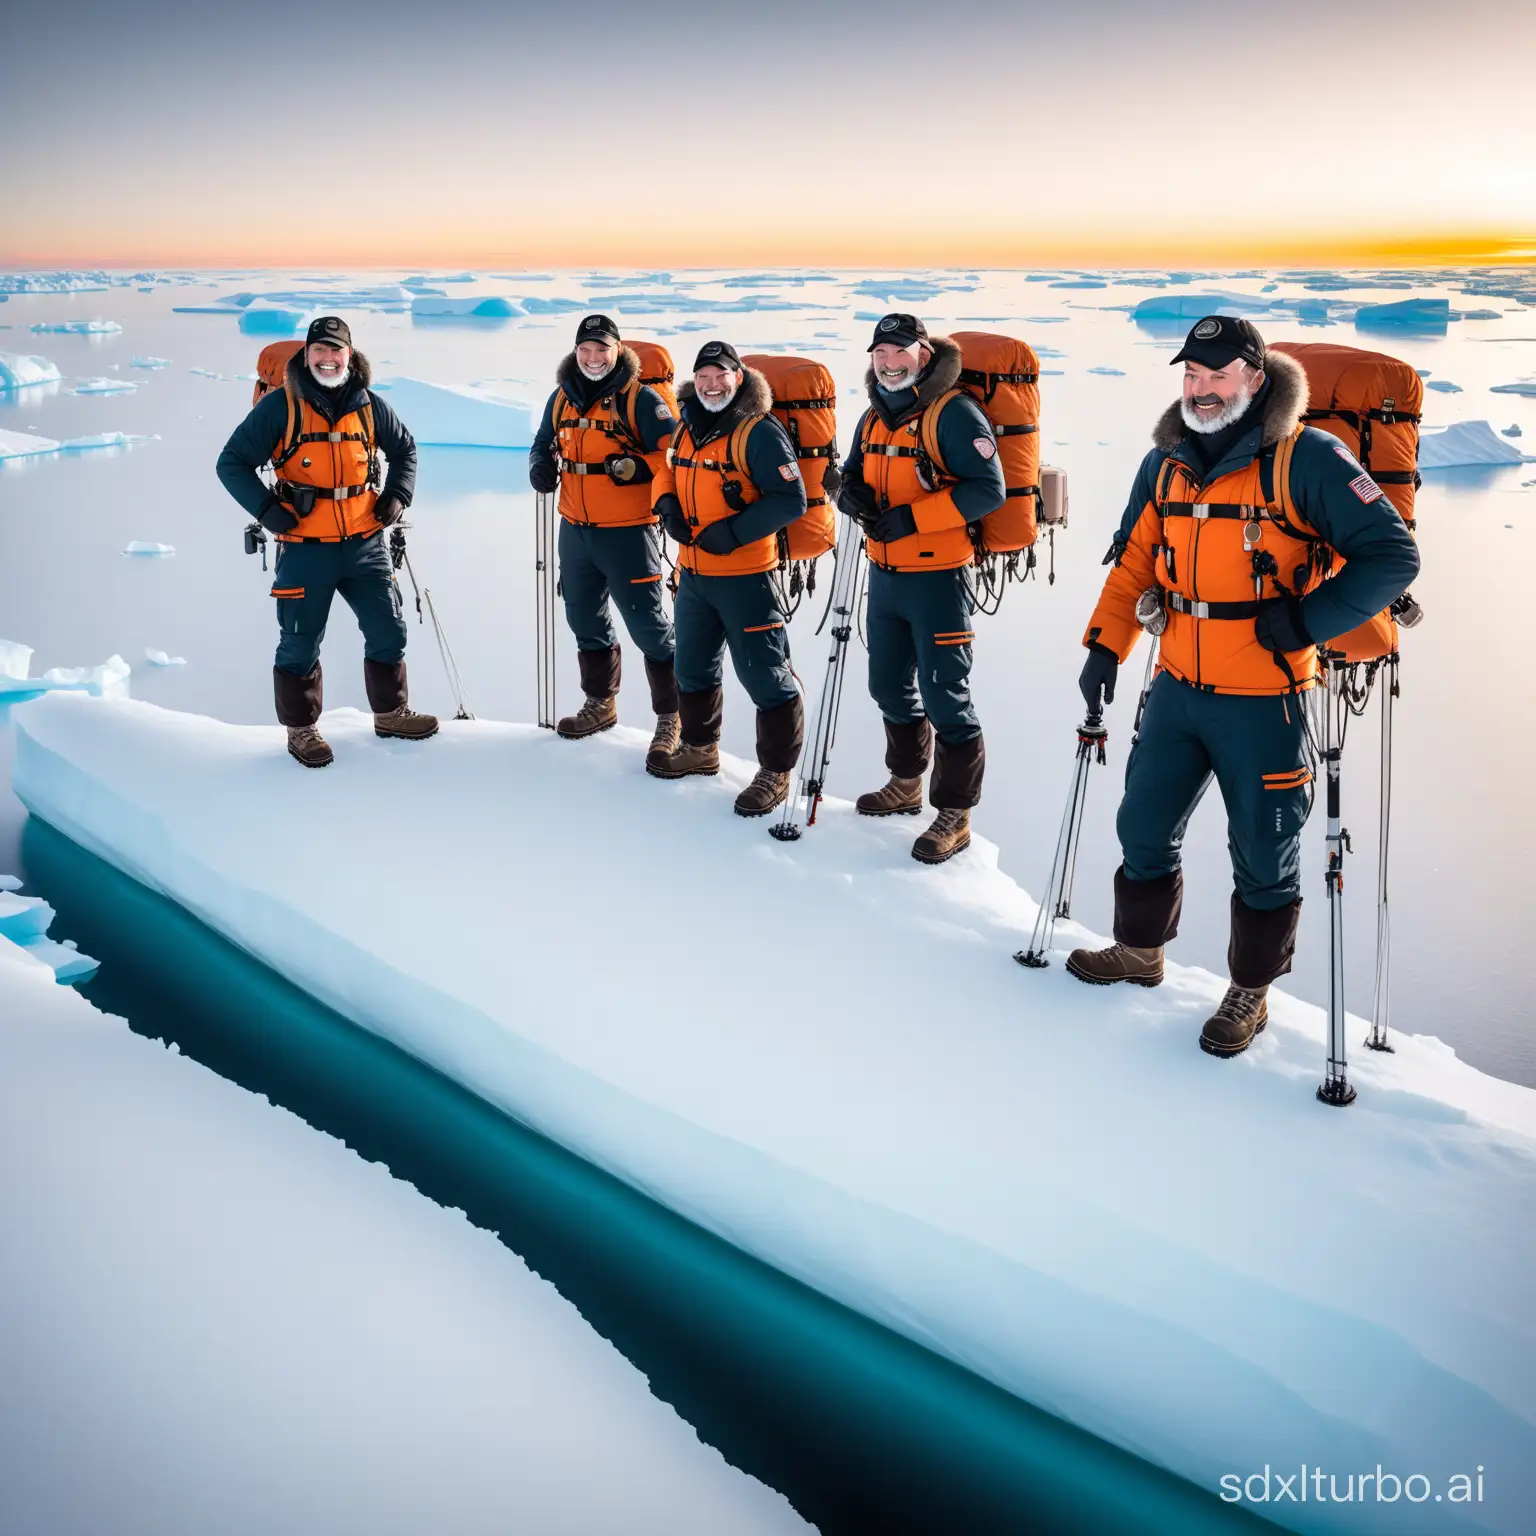 在一个遥远的南极洲，有一群勇敢的探险家准备开始一次刺激的南极冒险。他们的船长是一位名叫约翰的经验丰富的航海家，他带领着一支由科学家、摄影师和探险家组成的团队